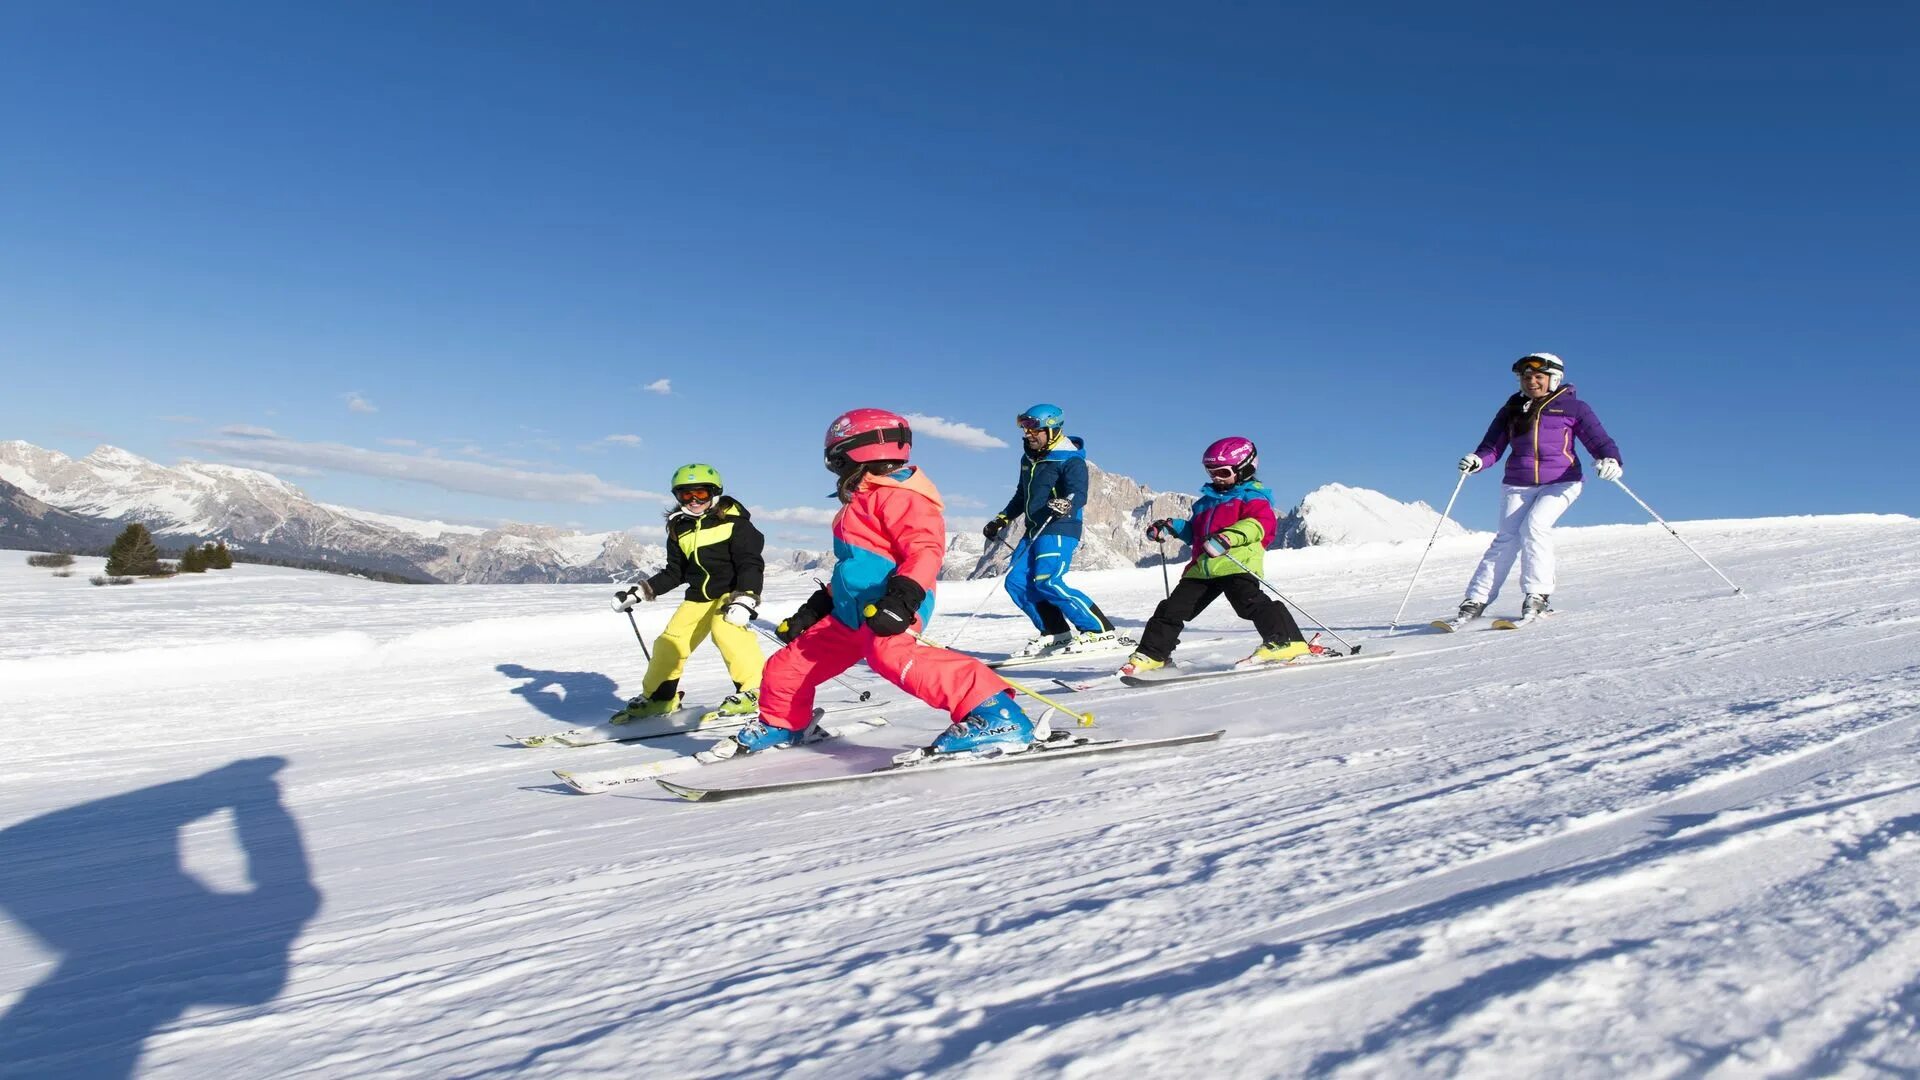 Skiing holiday. Катание на лыжах. Дети на лыжах. Катание на лыжах в школе. Горнолыжный туризм в сентябрь.